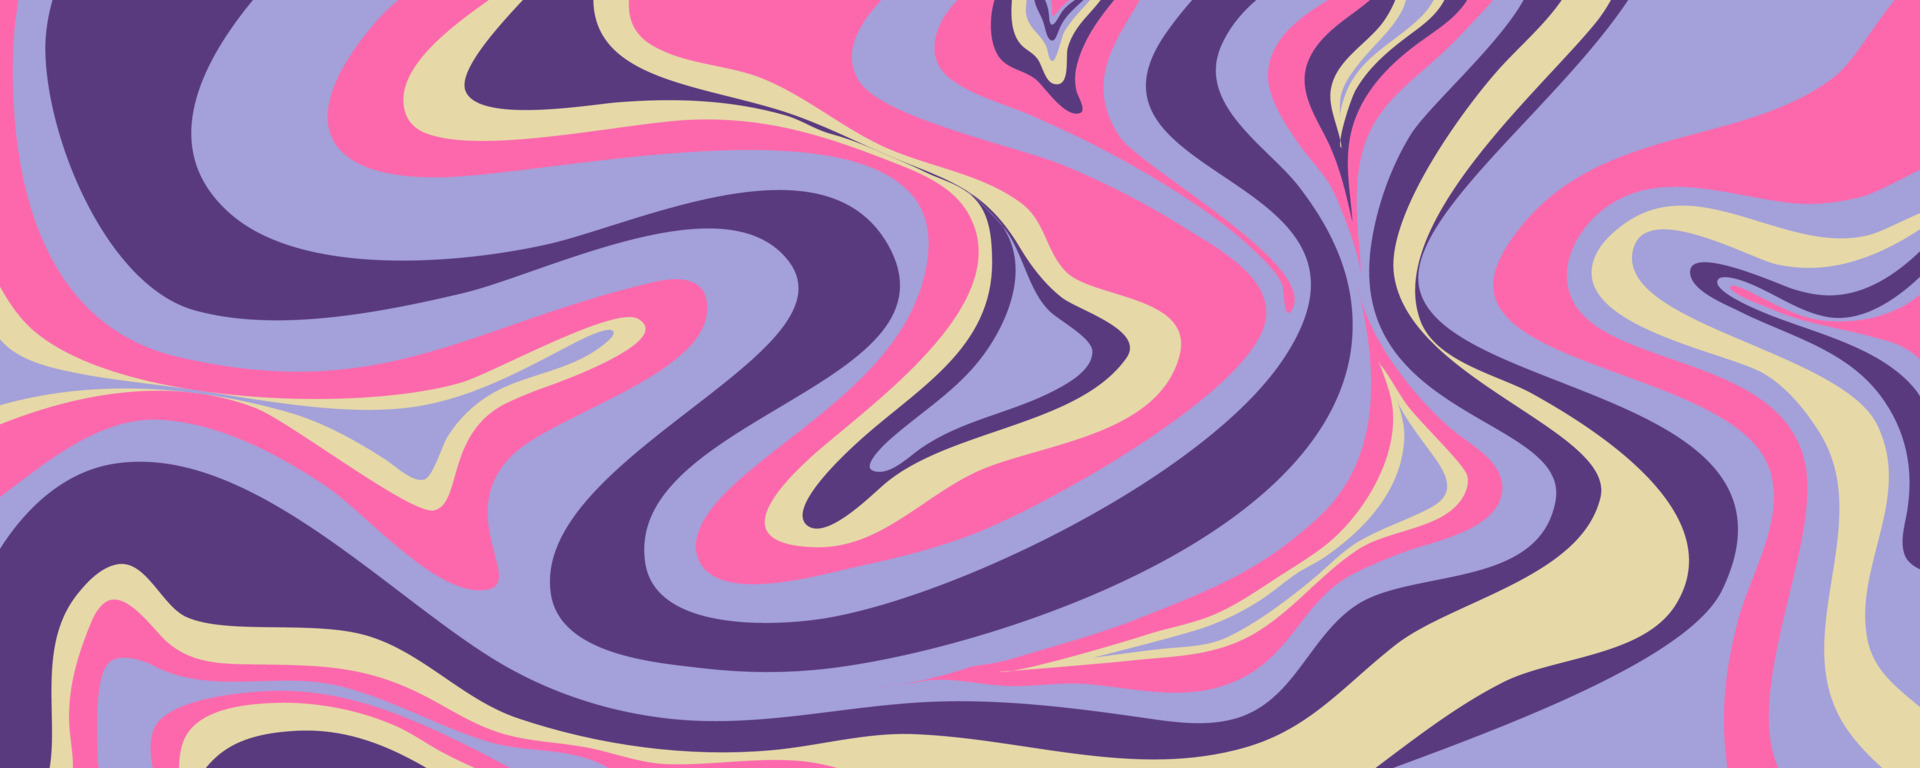 Hình nền sóng y2k: Bạn muốn có một hình nền có phong cách hiện đại và sang trọng? Hãy nhấn vào hình nền sóng y2k này ngay để trải nghiệm cảm giác đó. Với những đường sóng sáng tạo và phối màu đồng nhất, bức hình sẽ khiến bạn cảm thấy đầy sức sống và quyến rũ.